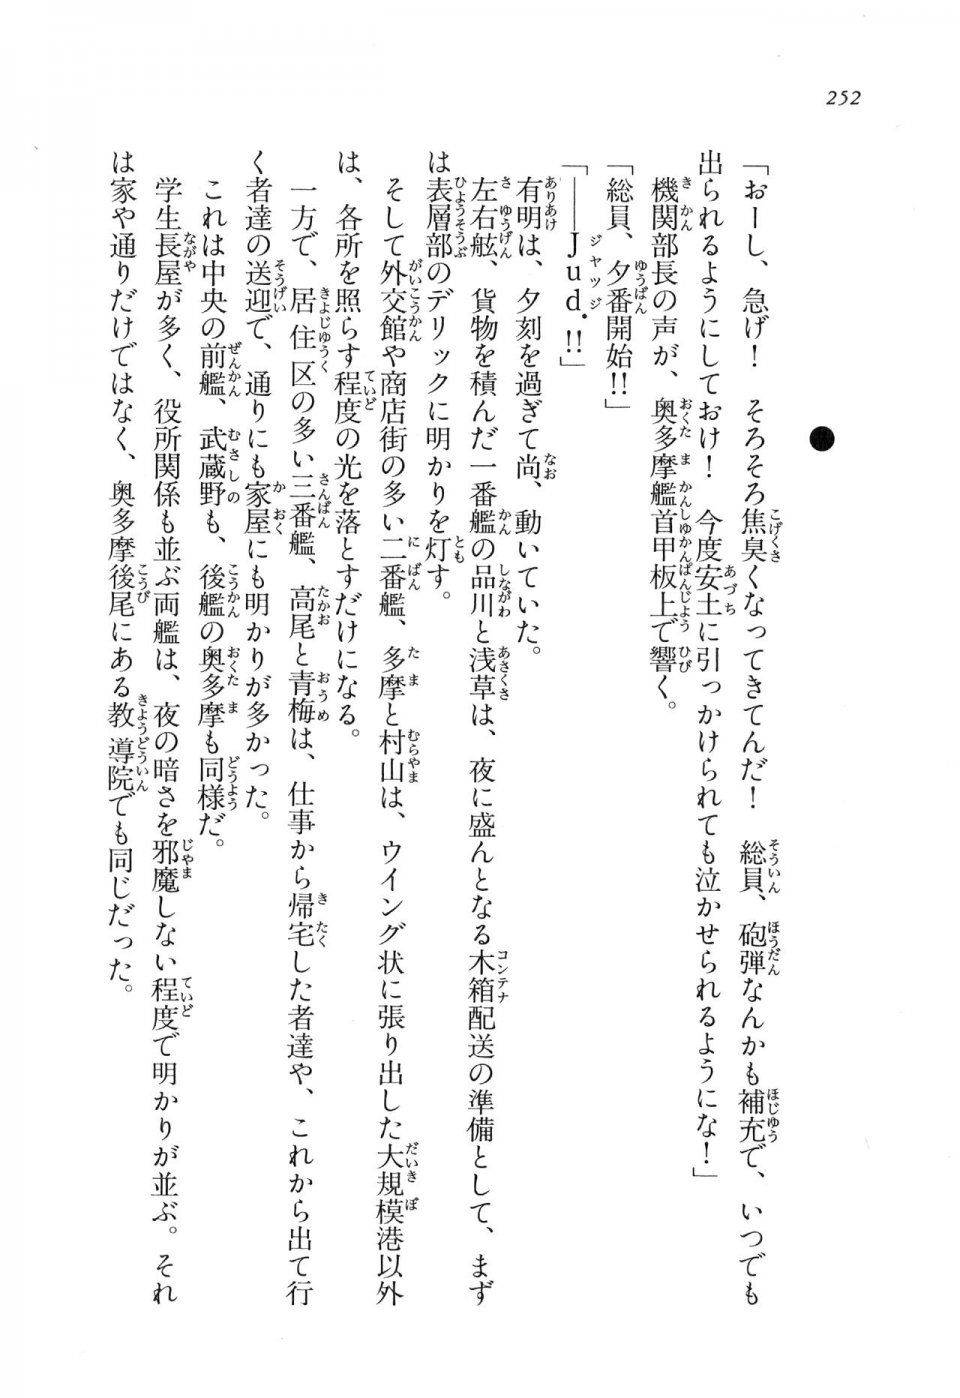 Kyoukai Senjou no Horizon LN Vol 11(5A) - Photo #252